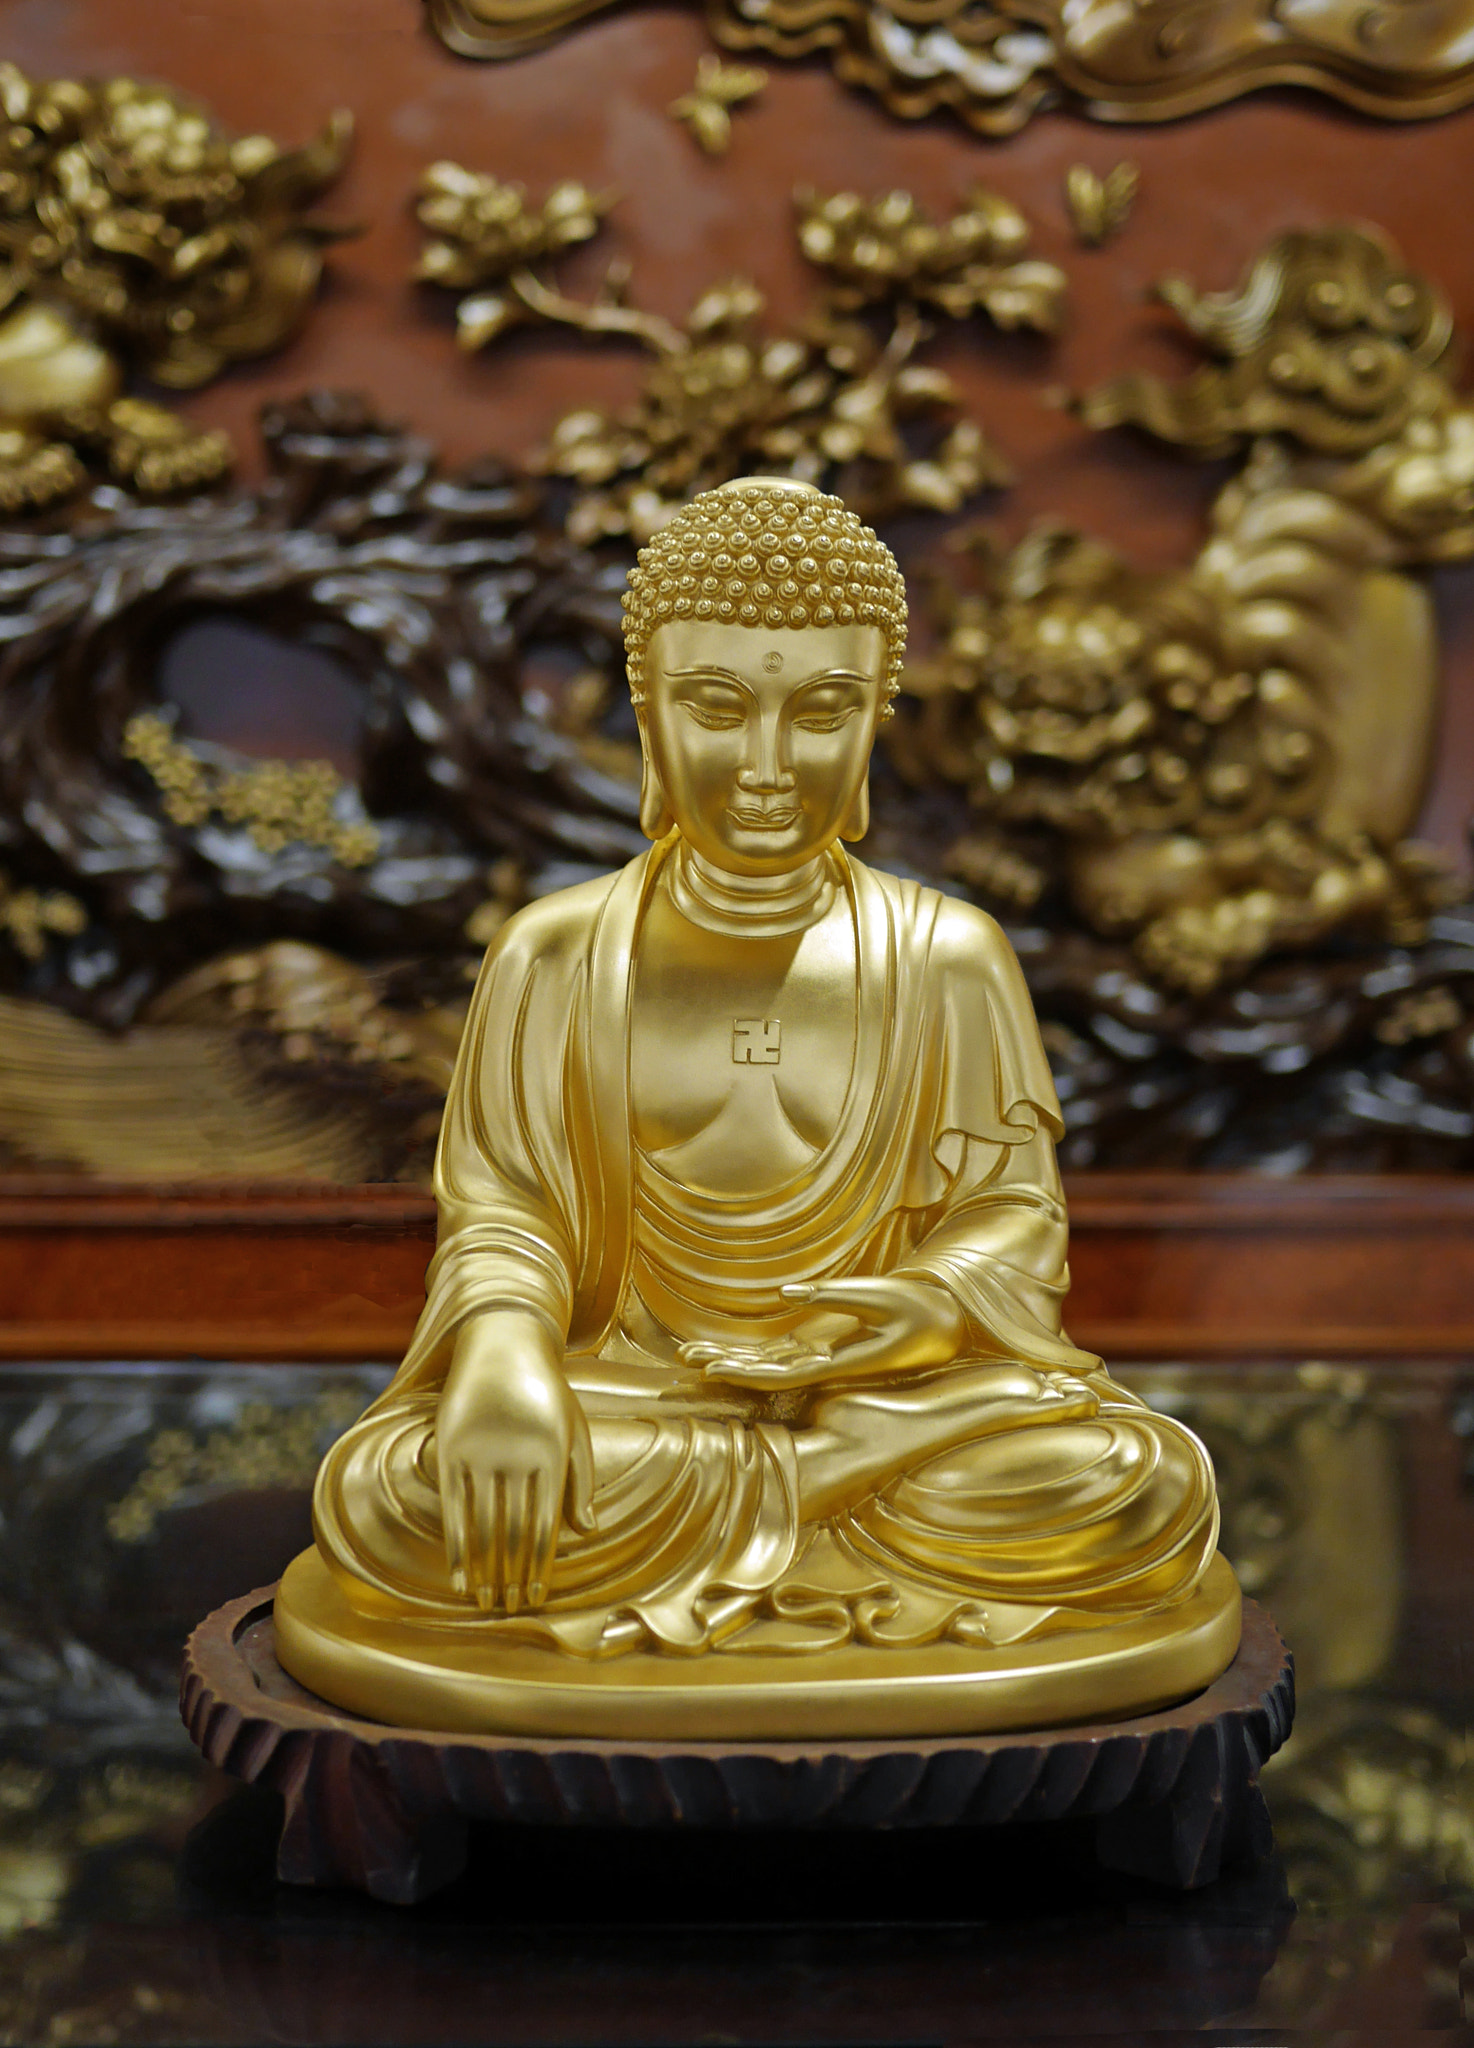 Panasonic Lumix DMC-GX7 sample photo. Statue of buddha seated photography